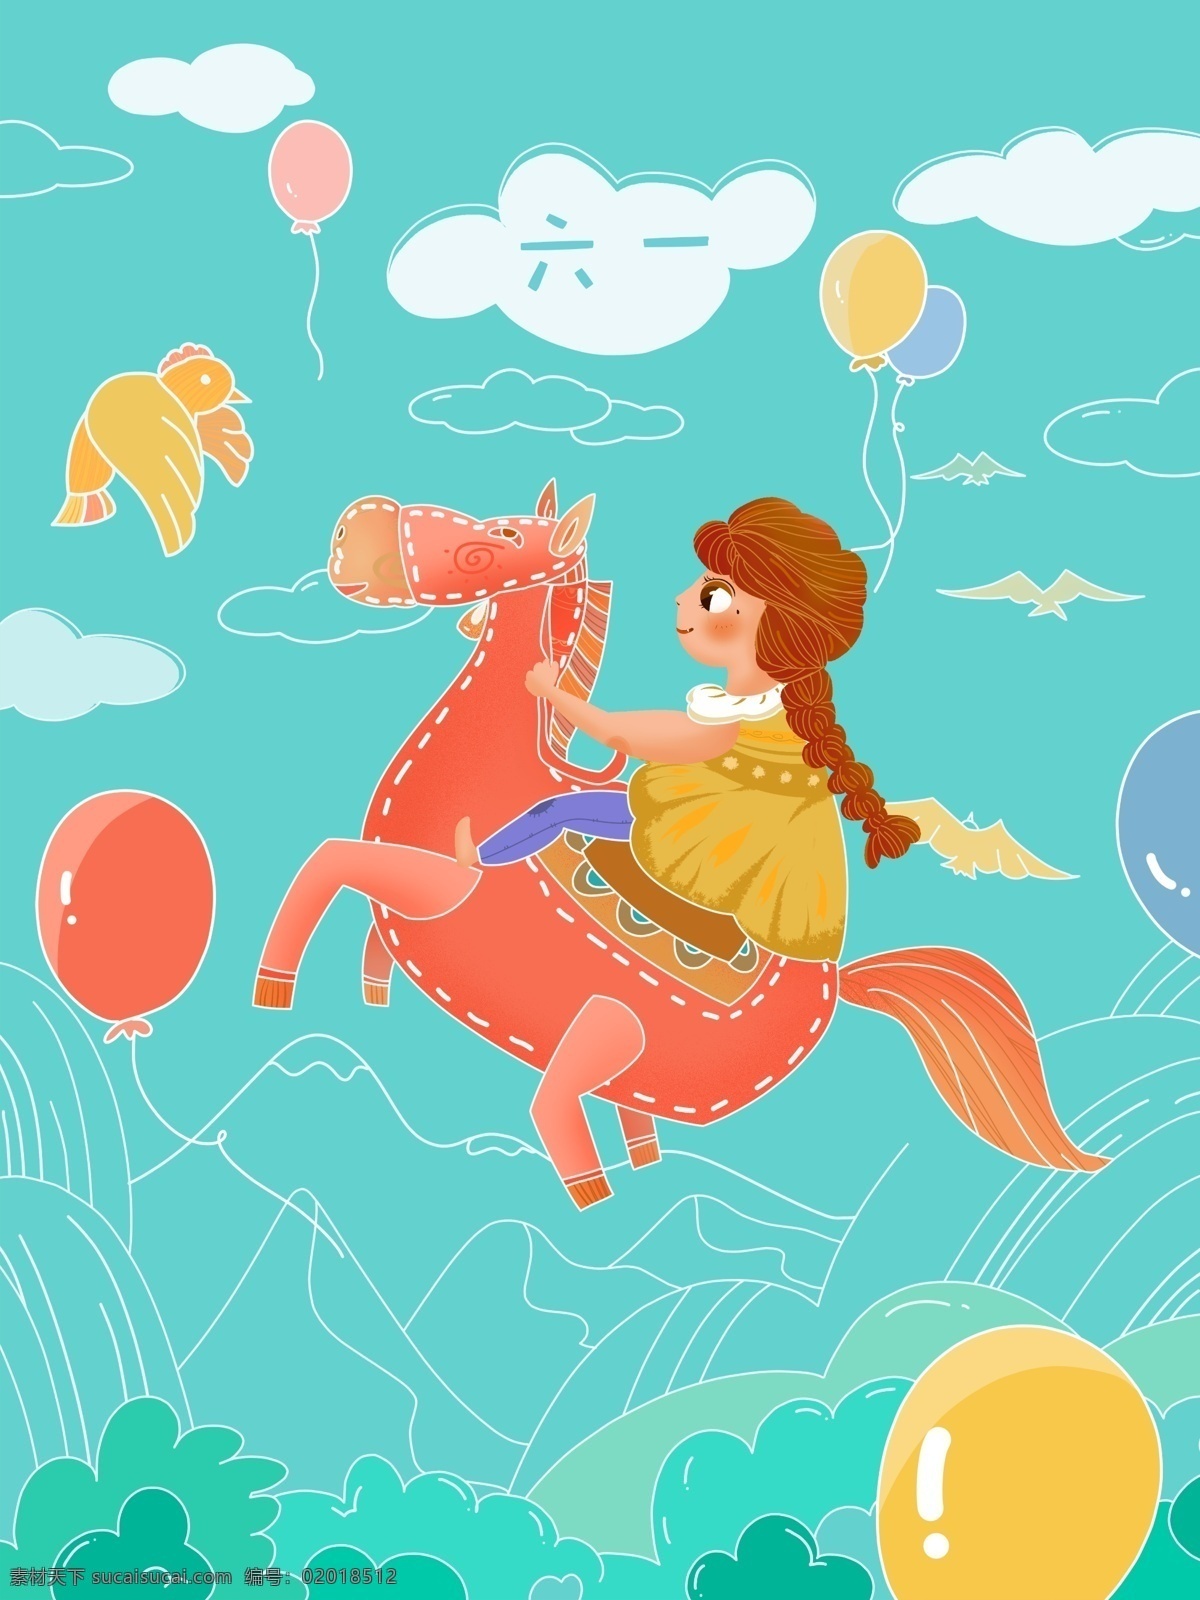 创意 儿童节 骑 小马 遨游 天空 女孩 原创 商业插画 壁纸海报 扁平风格 马驹 气球 虚实象生